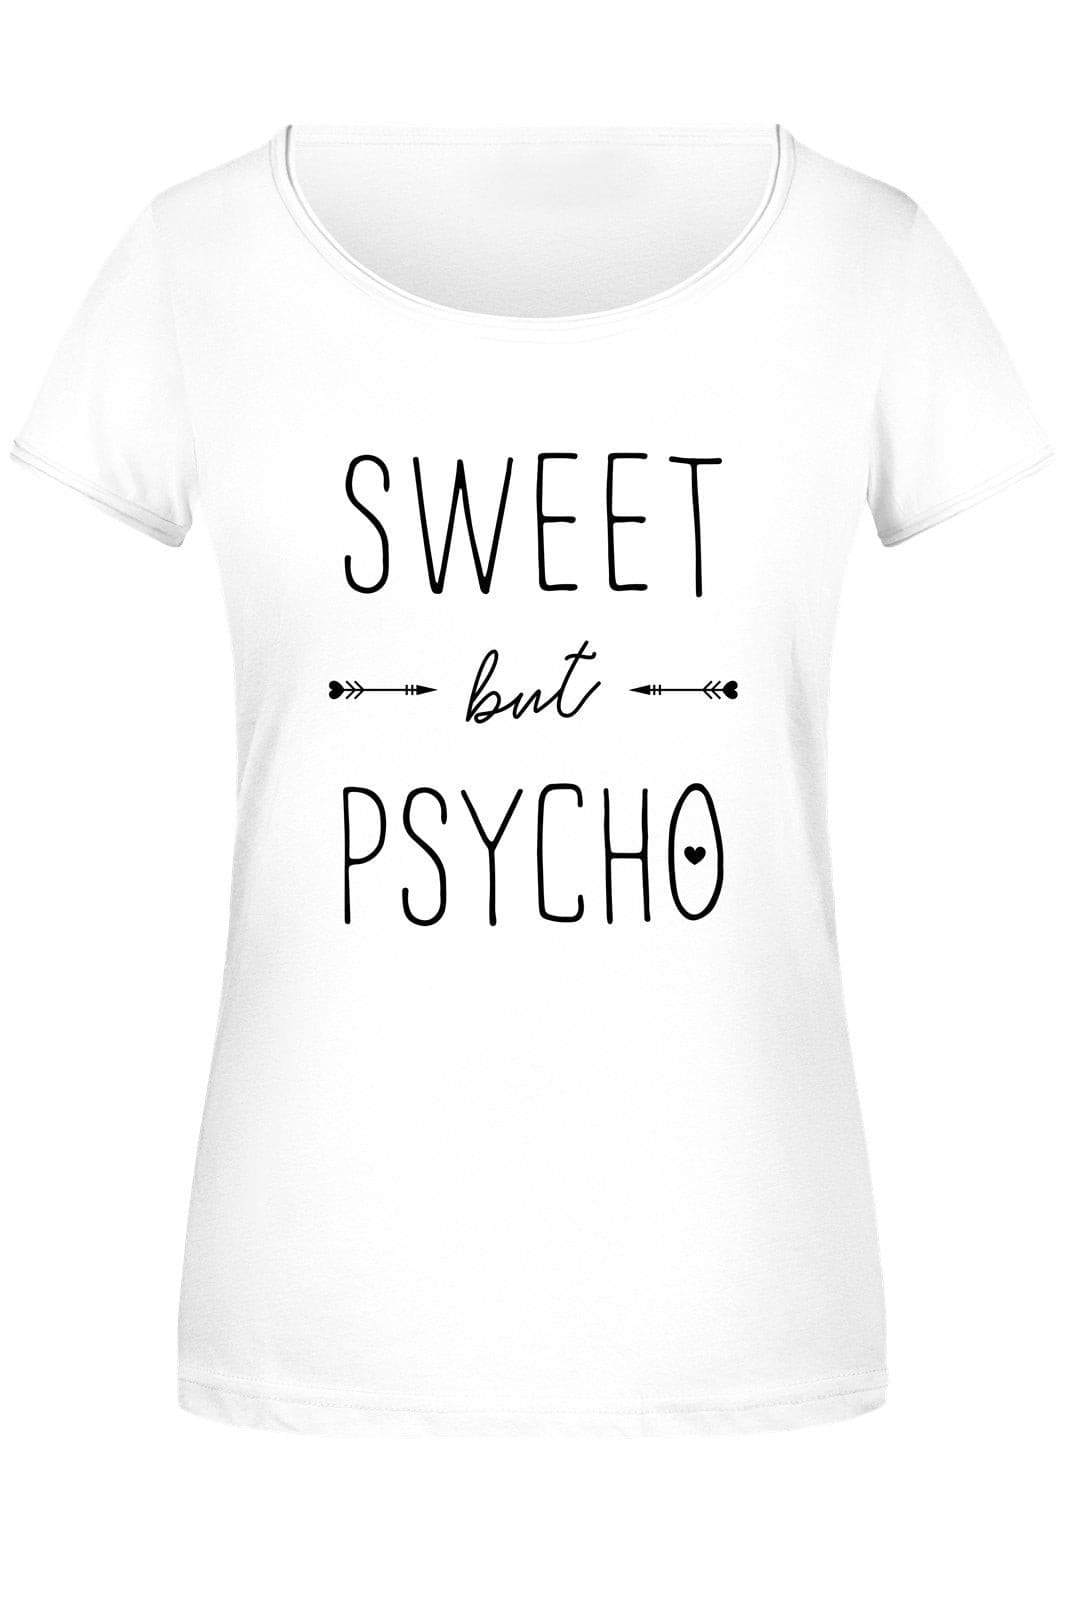 Bild: T-Shirt Damen - Sweet but Psycho Geschenkidee